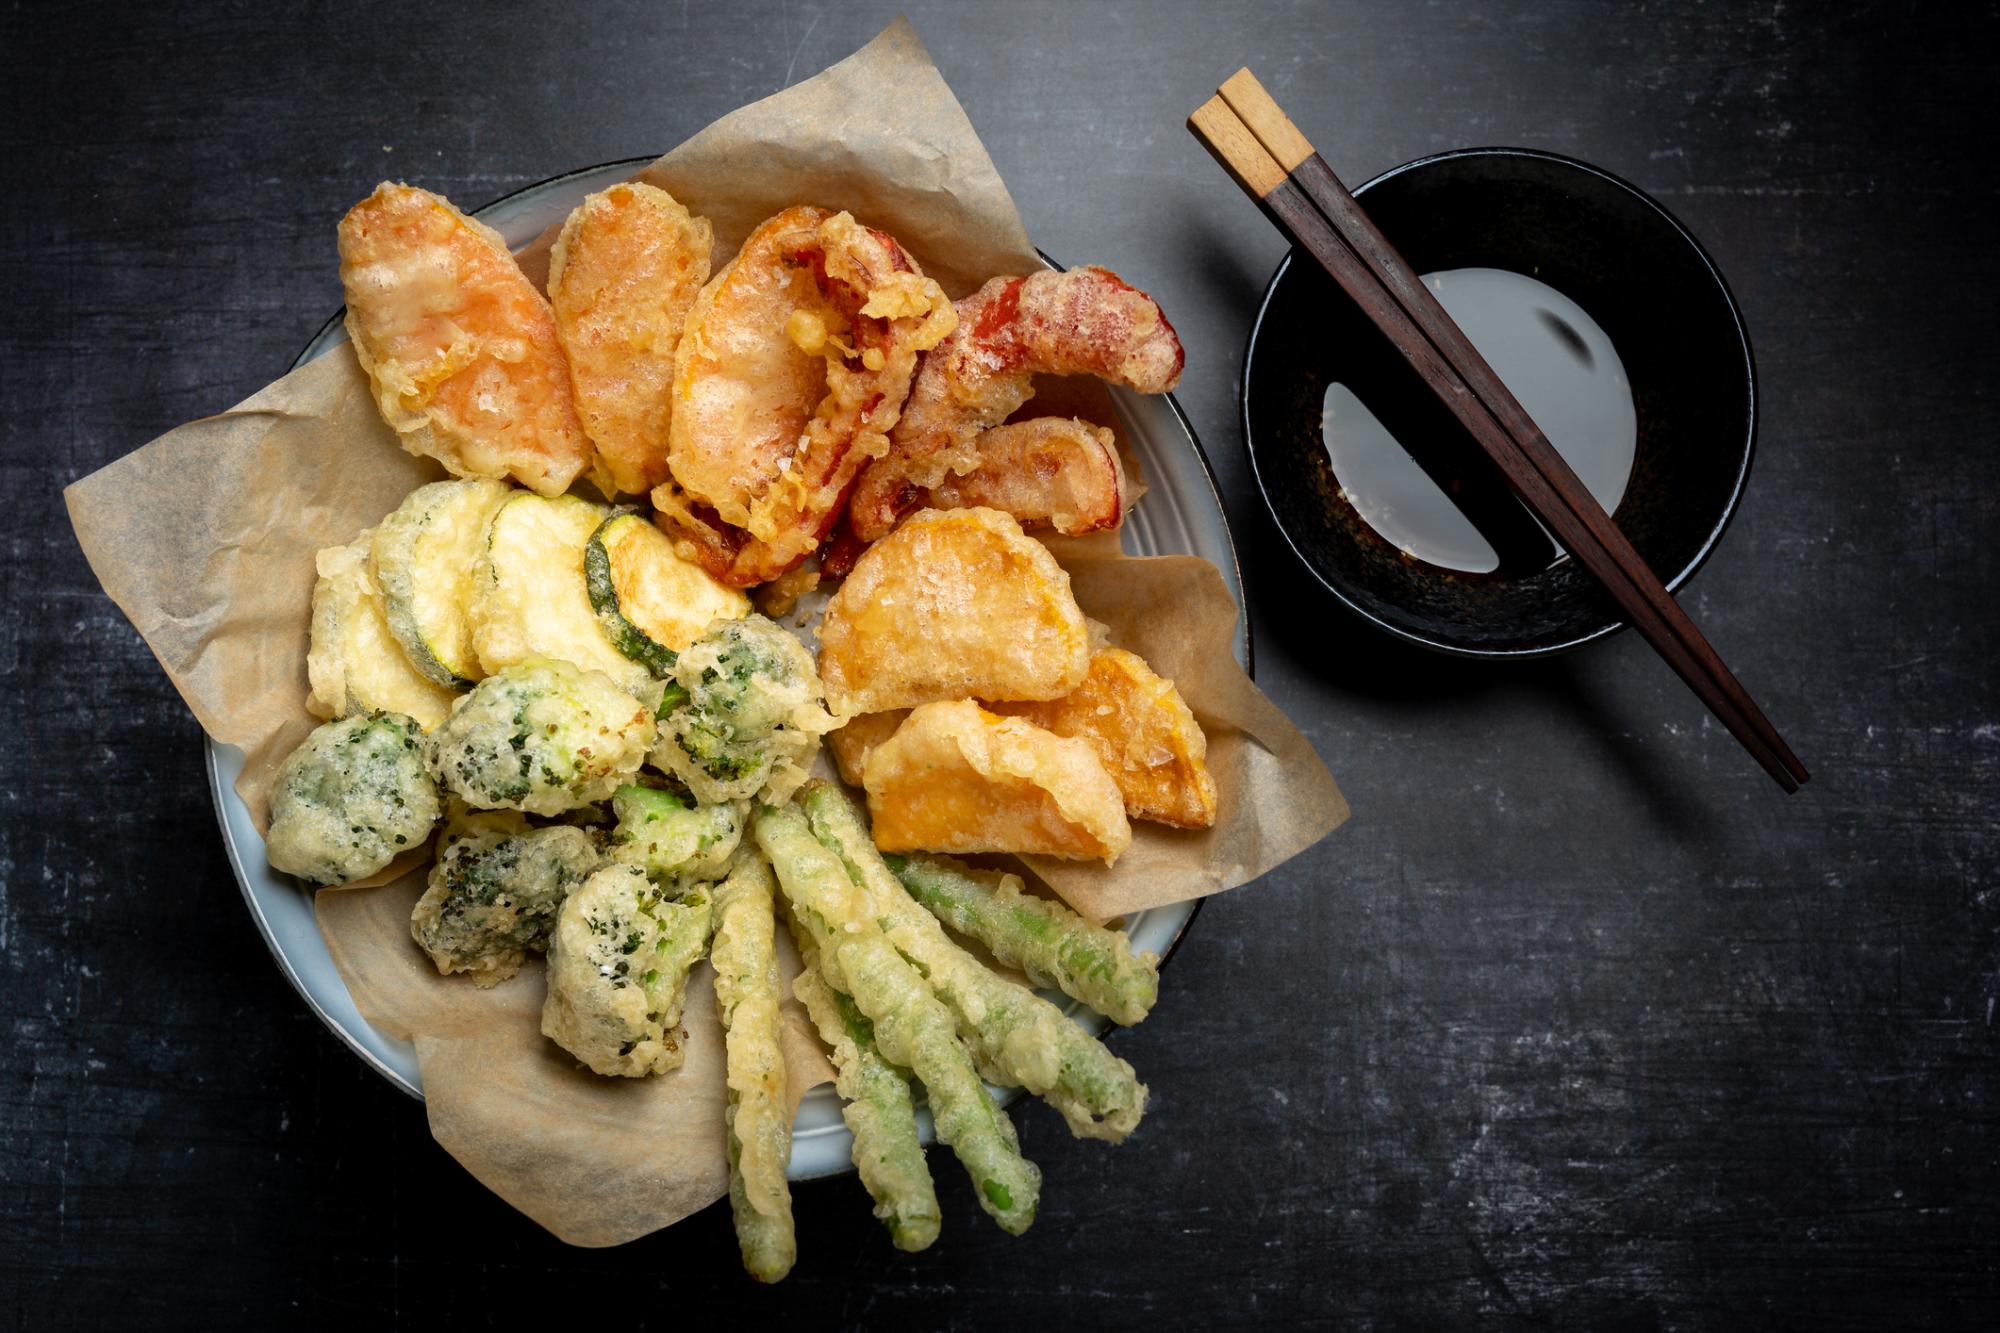 El tempura se hace con una masa ligera con harina, huevo y agua fría.